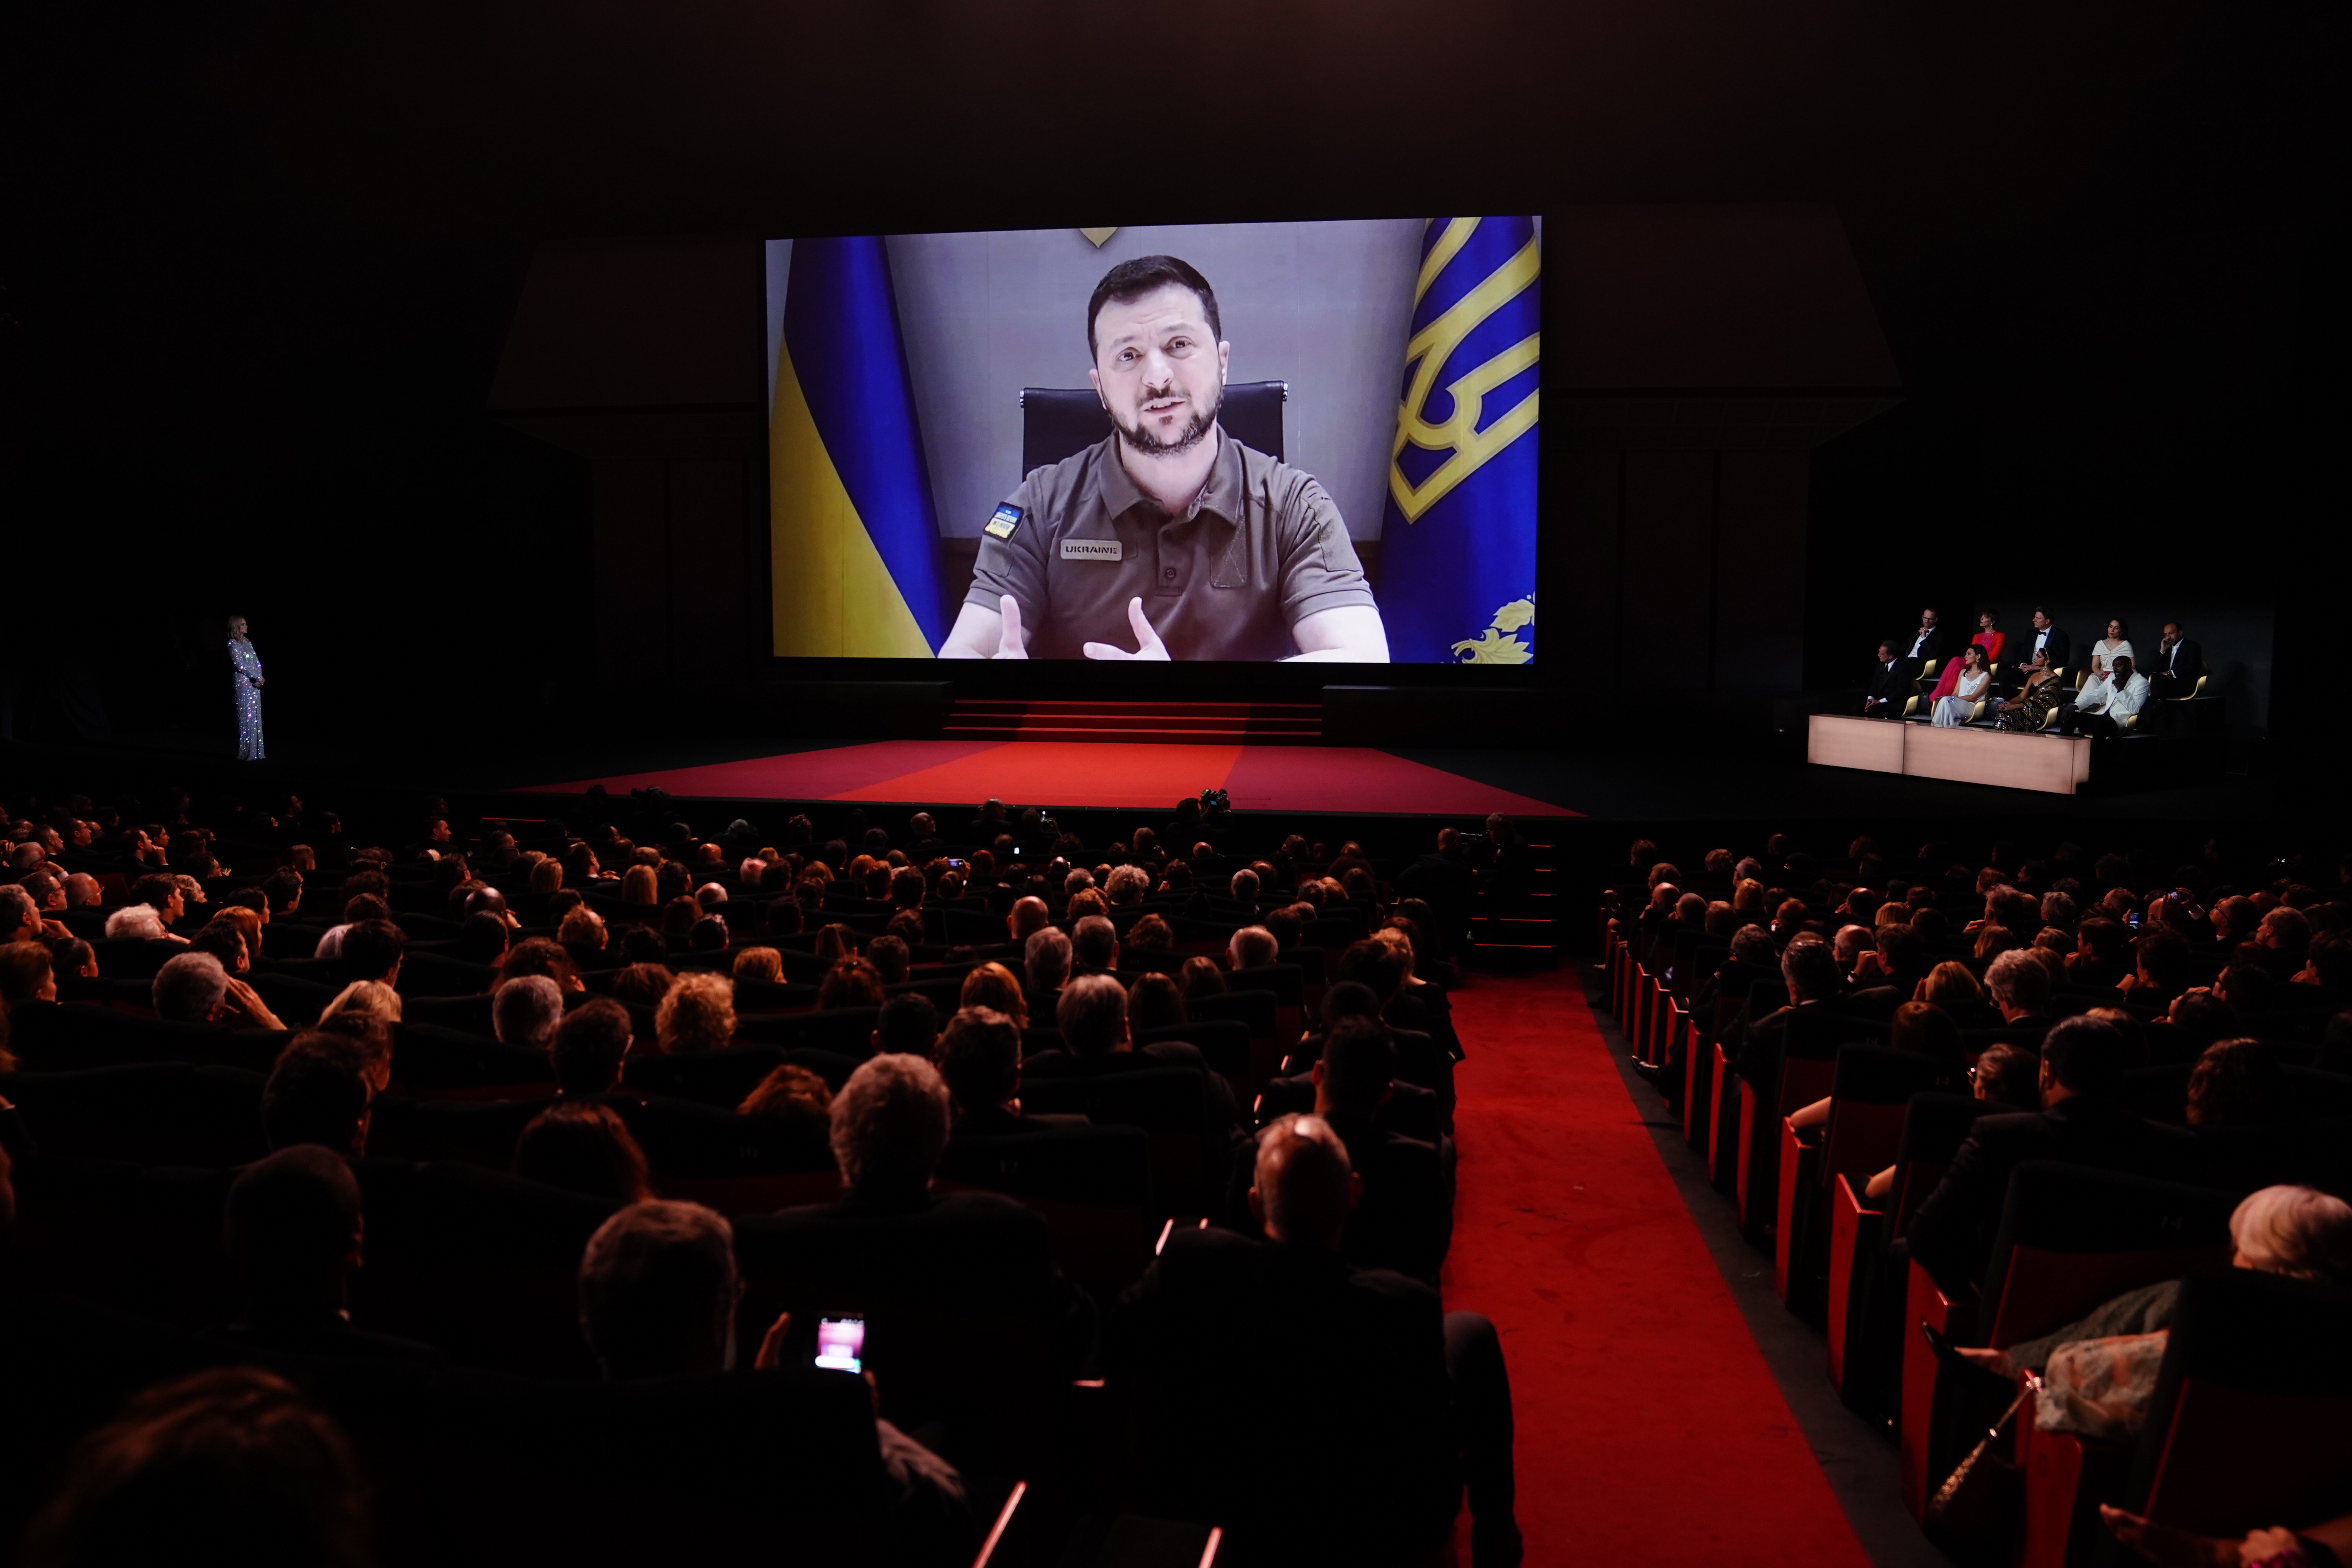 Intervenció sorpresa de Zelenski a la gala de Canes: demana que el cinema no calli